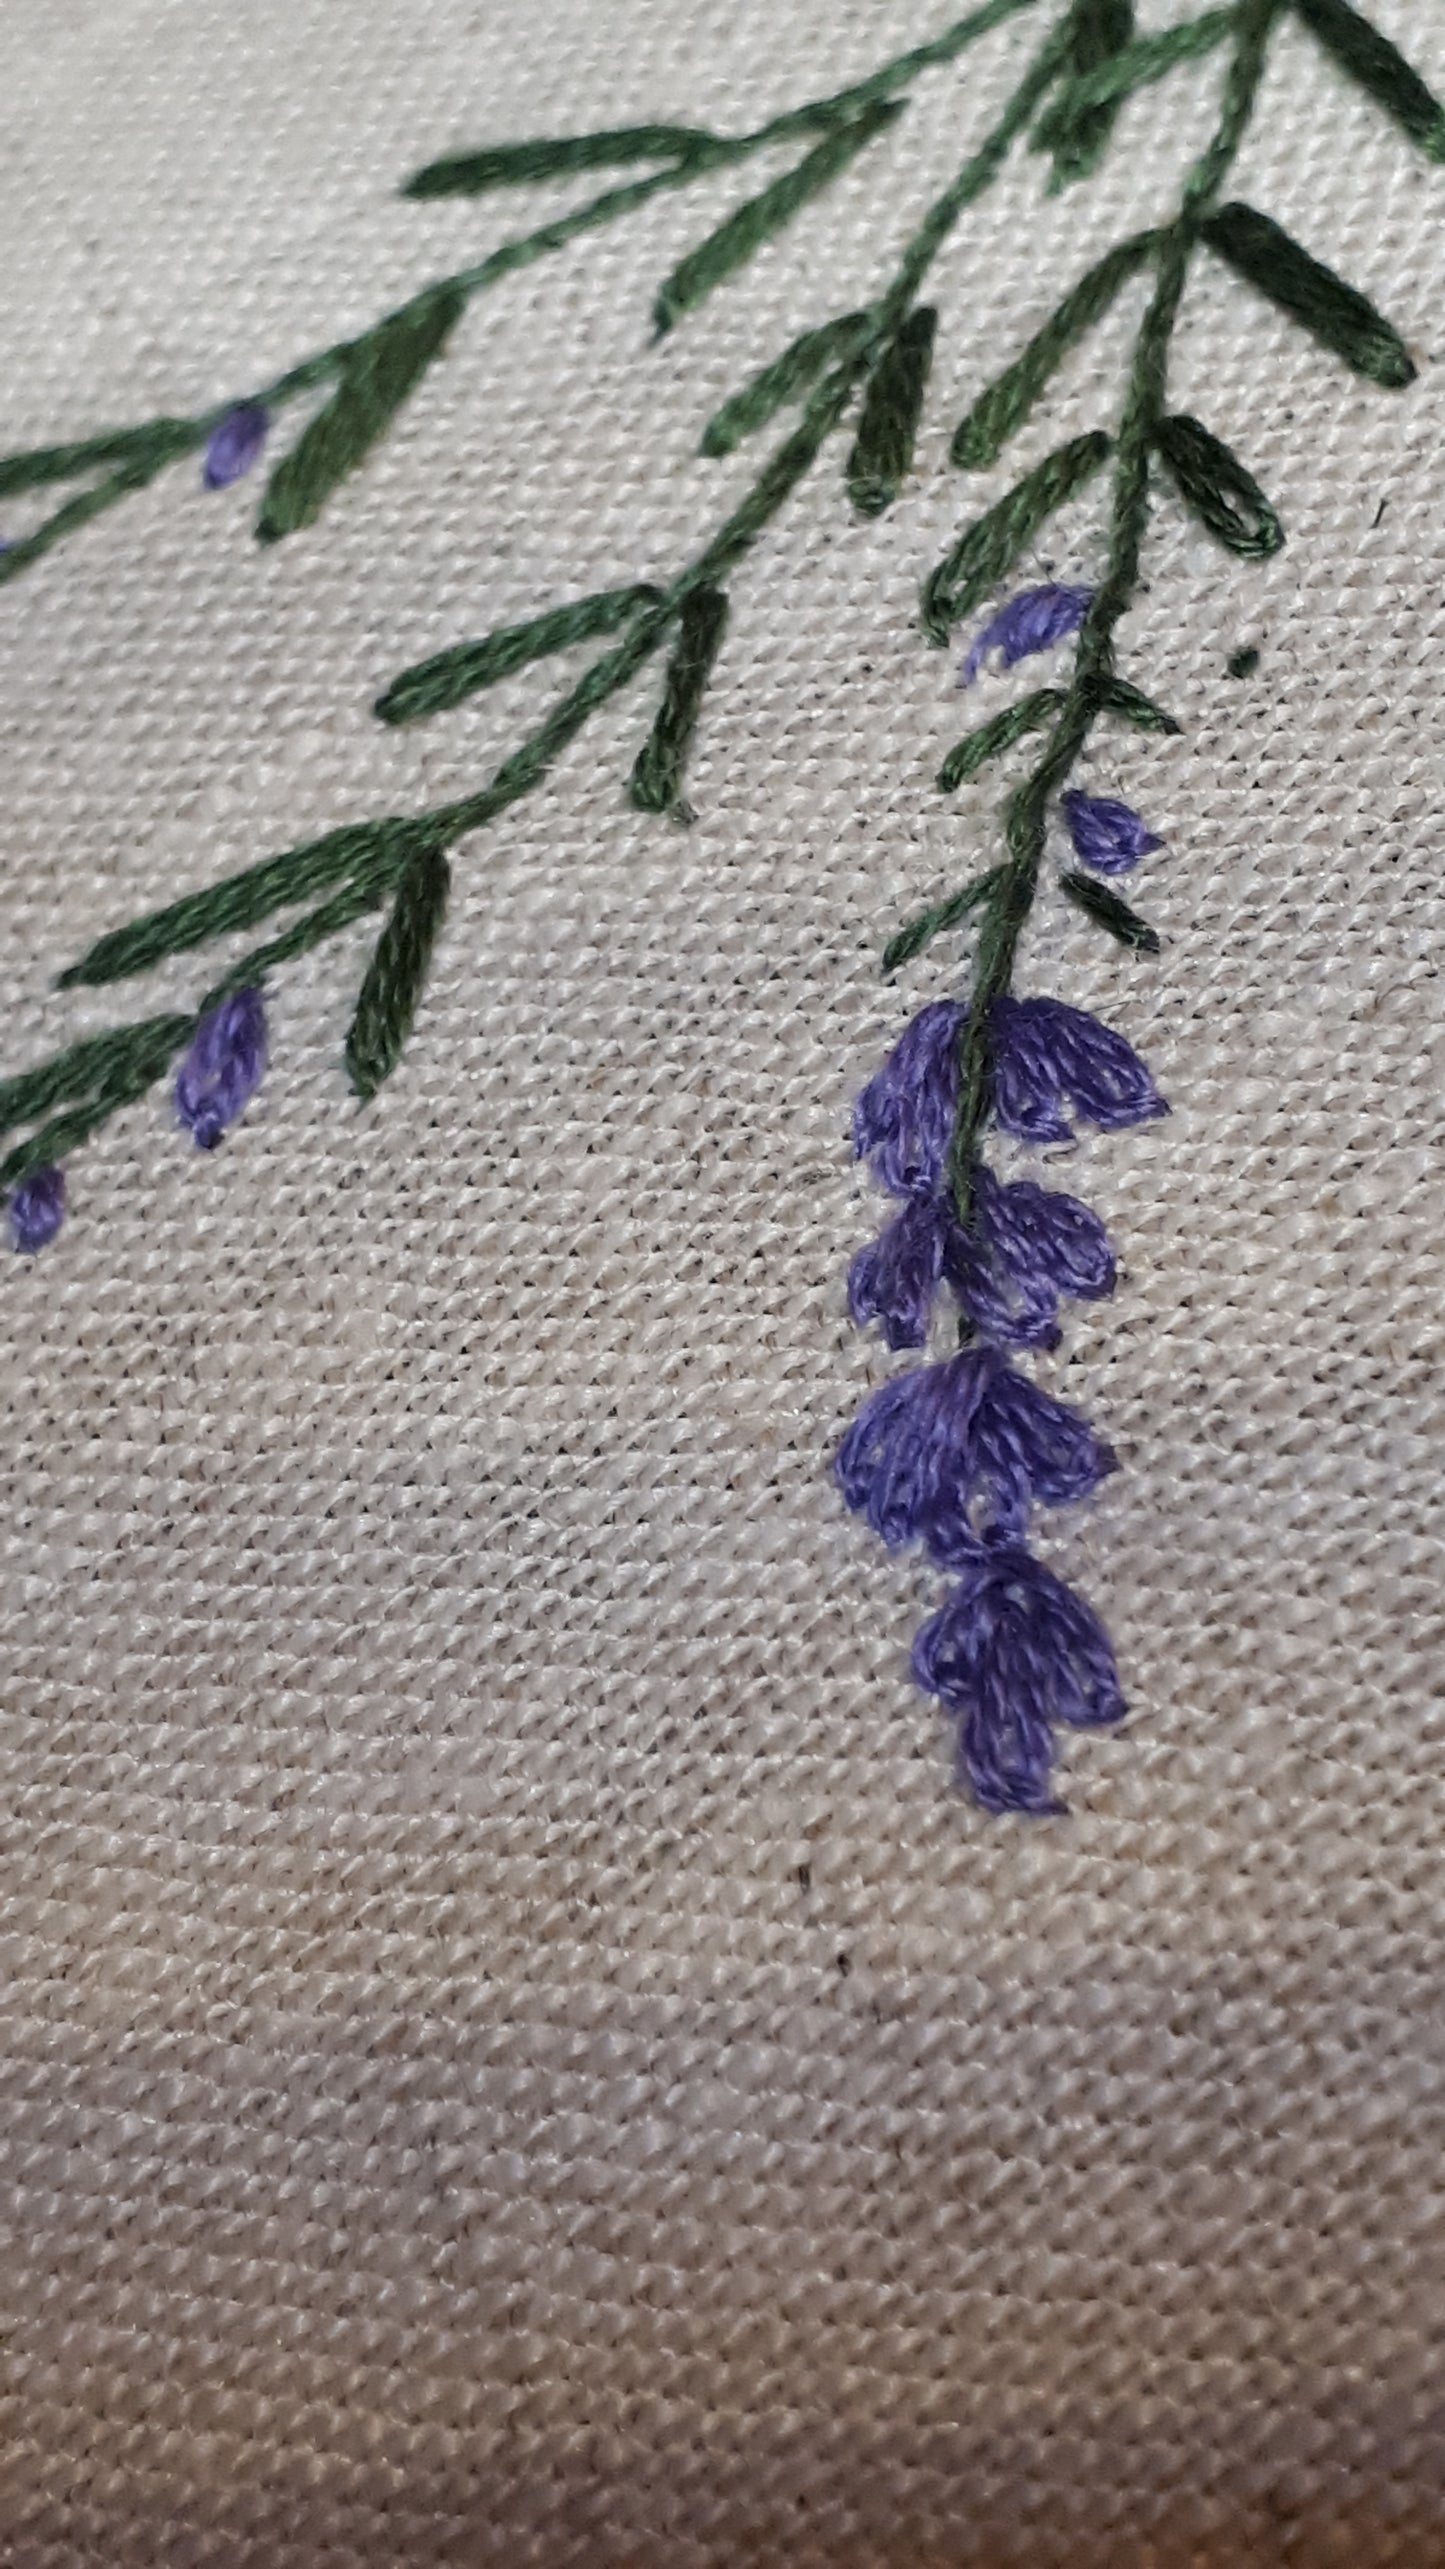 Lavender Sprigs Embroidery Workshop